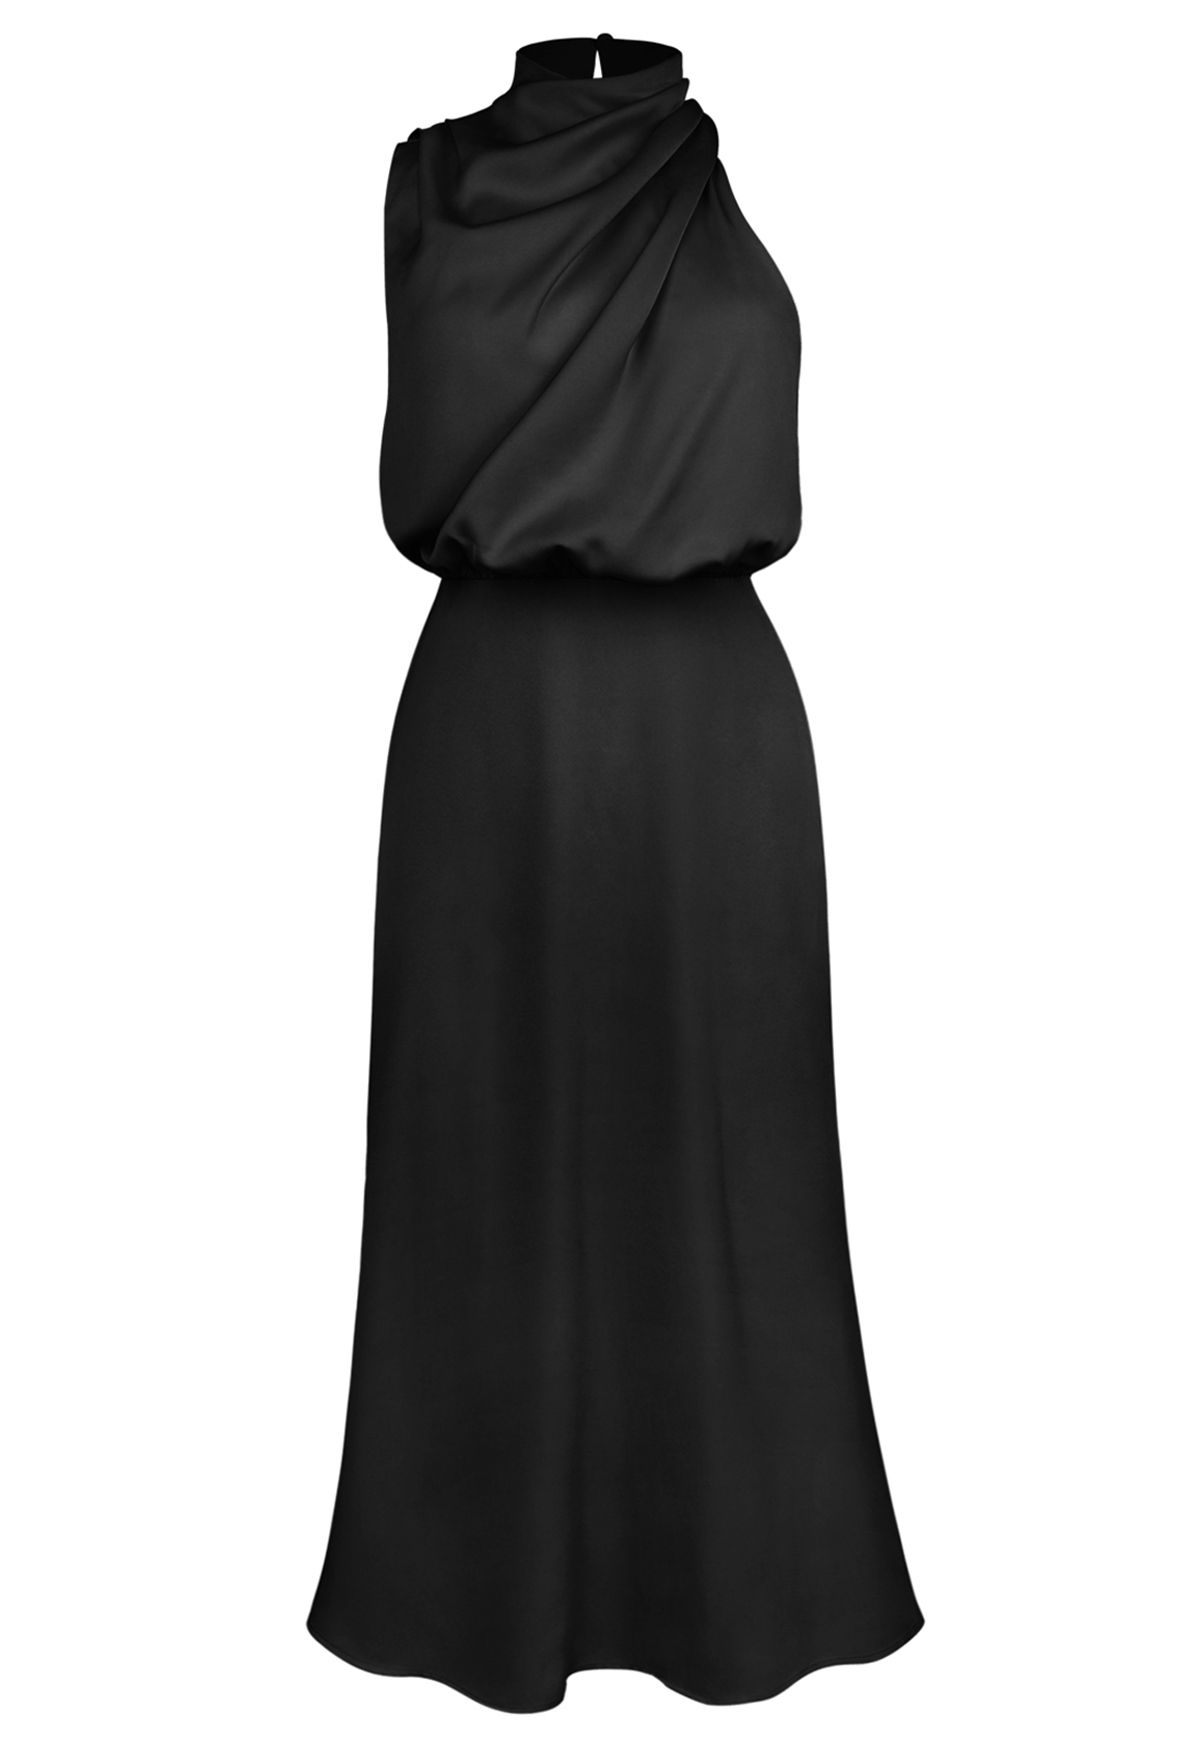 غير متماثل Ruched العنق بلا أكمام فستان باللون الأسود